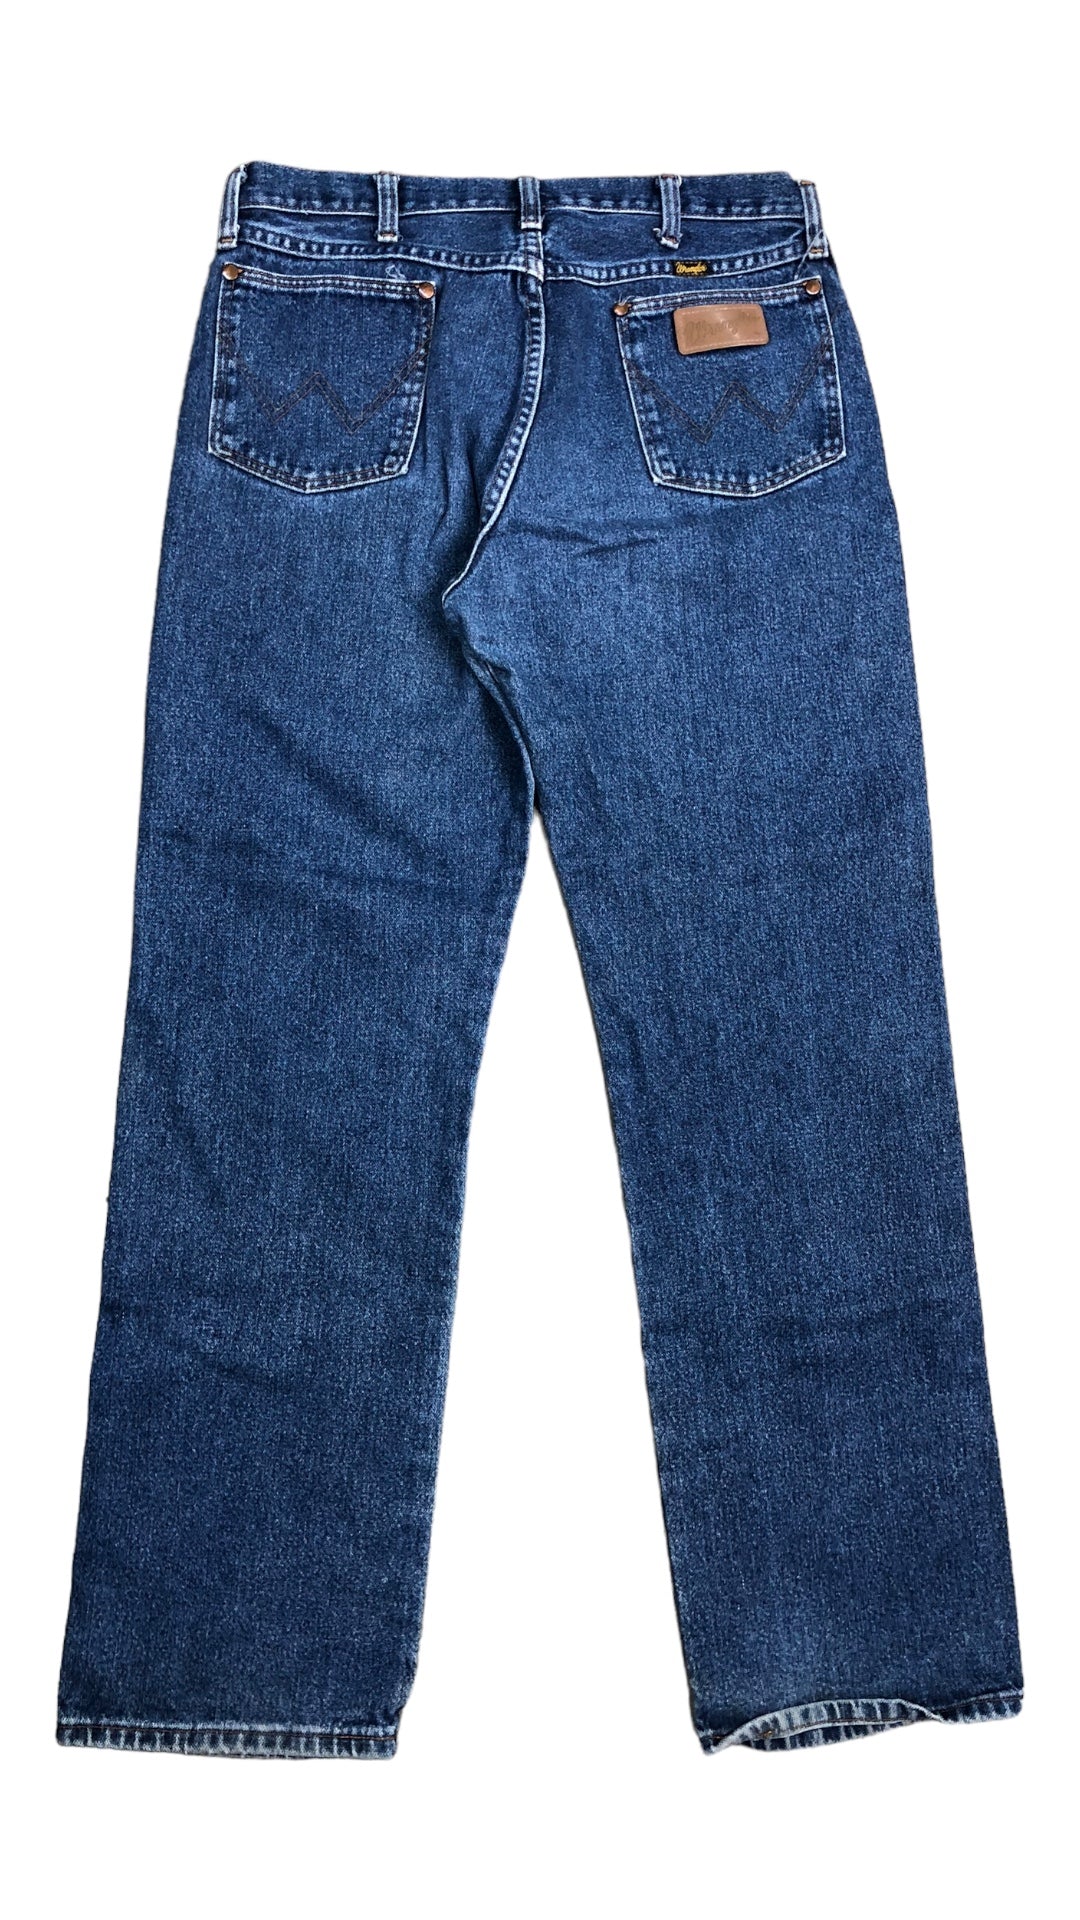 VTG Wrangler Blue Denim Jeans Sz 31x31